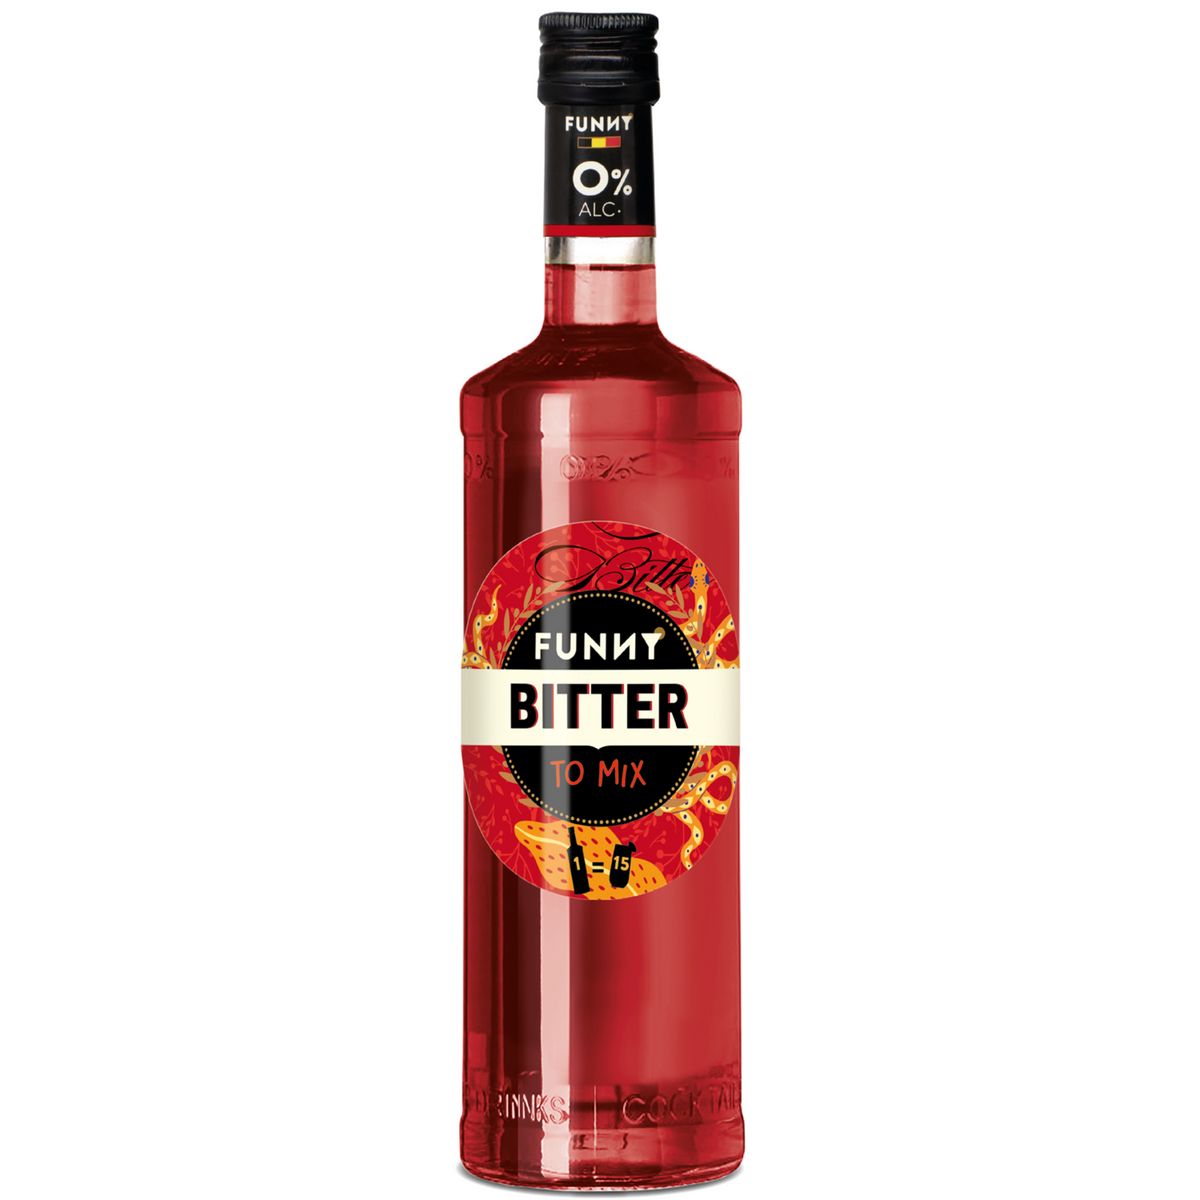 FUNNY Apéritif bitter aromatisé sans alcool 70cl